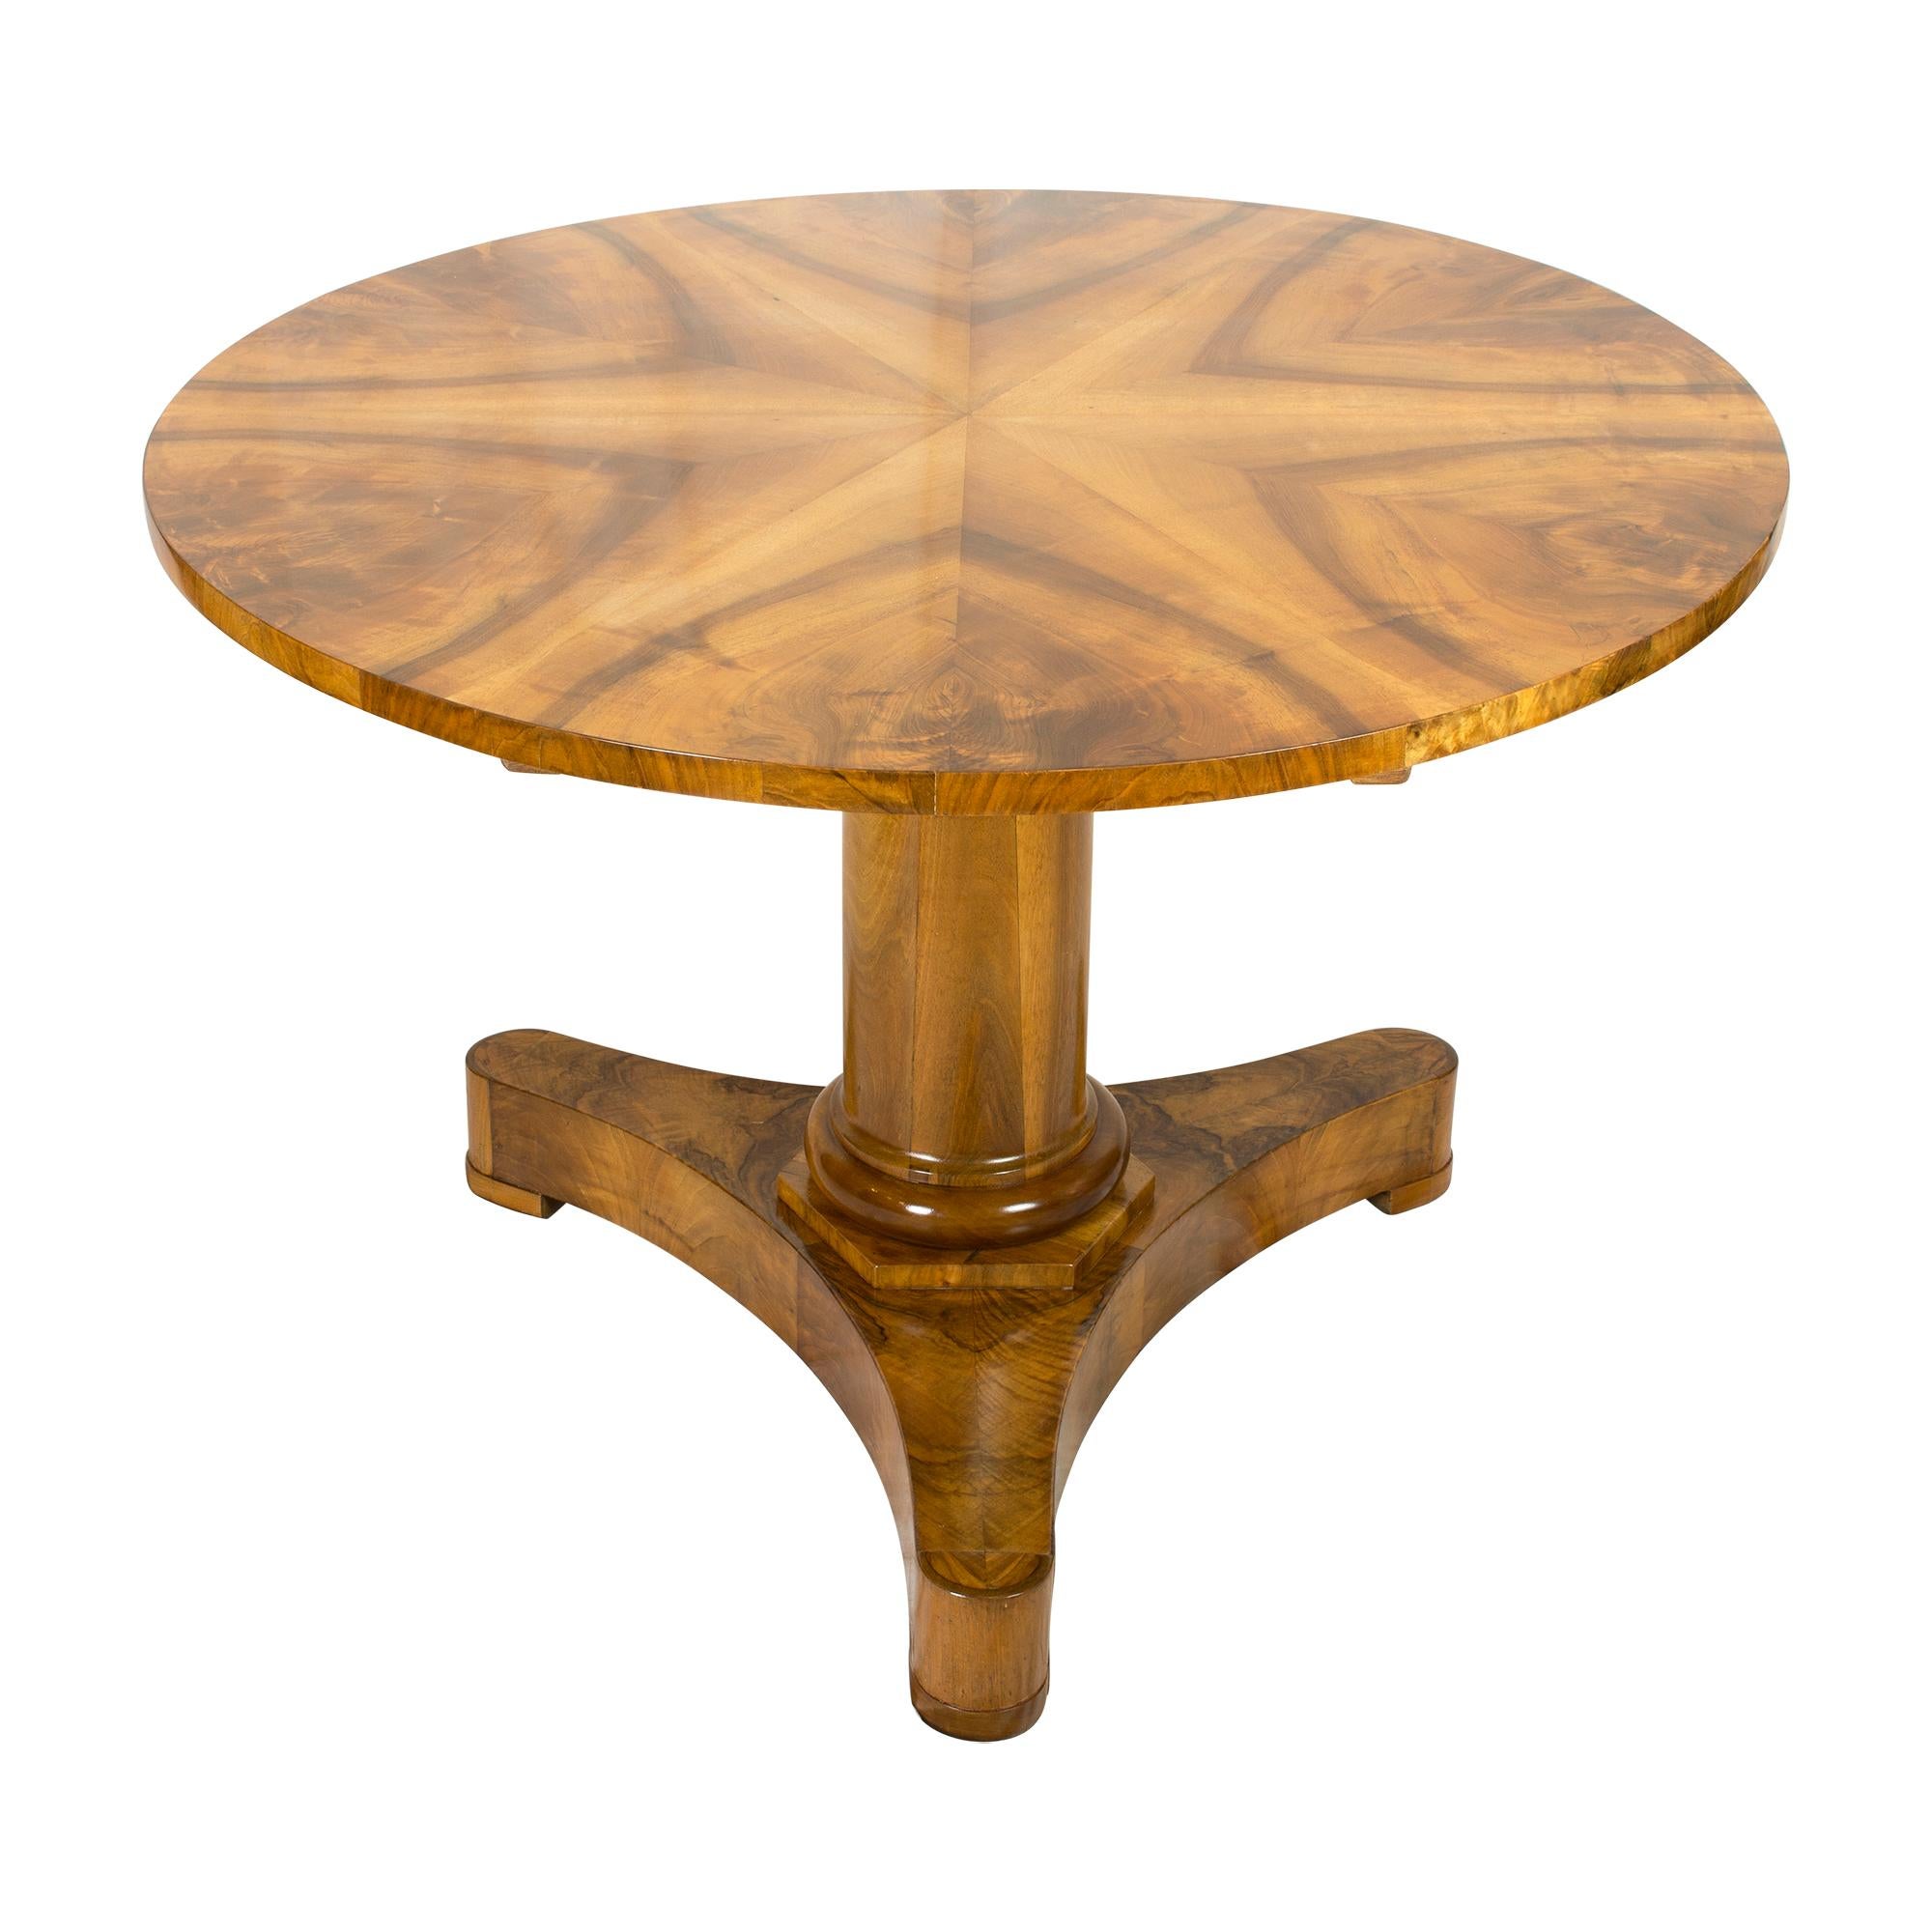 Voici la table ronde Biedermeier, fabriquée en placage de noyer sur une base en bois d'épicéa massif. Cette table présente un design simple mais élégant et est parfaite pour les dîners intimes ou les réunions d'affaires. La forme ronde offre